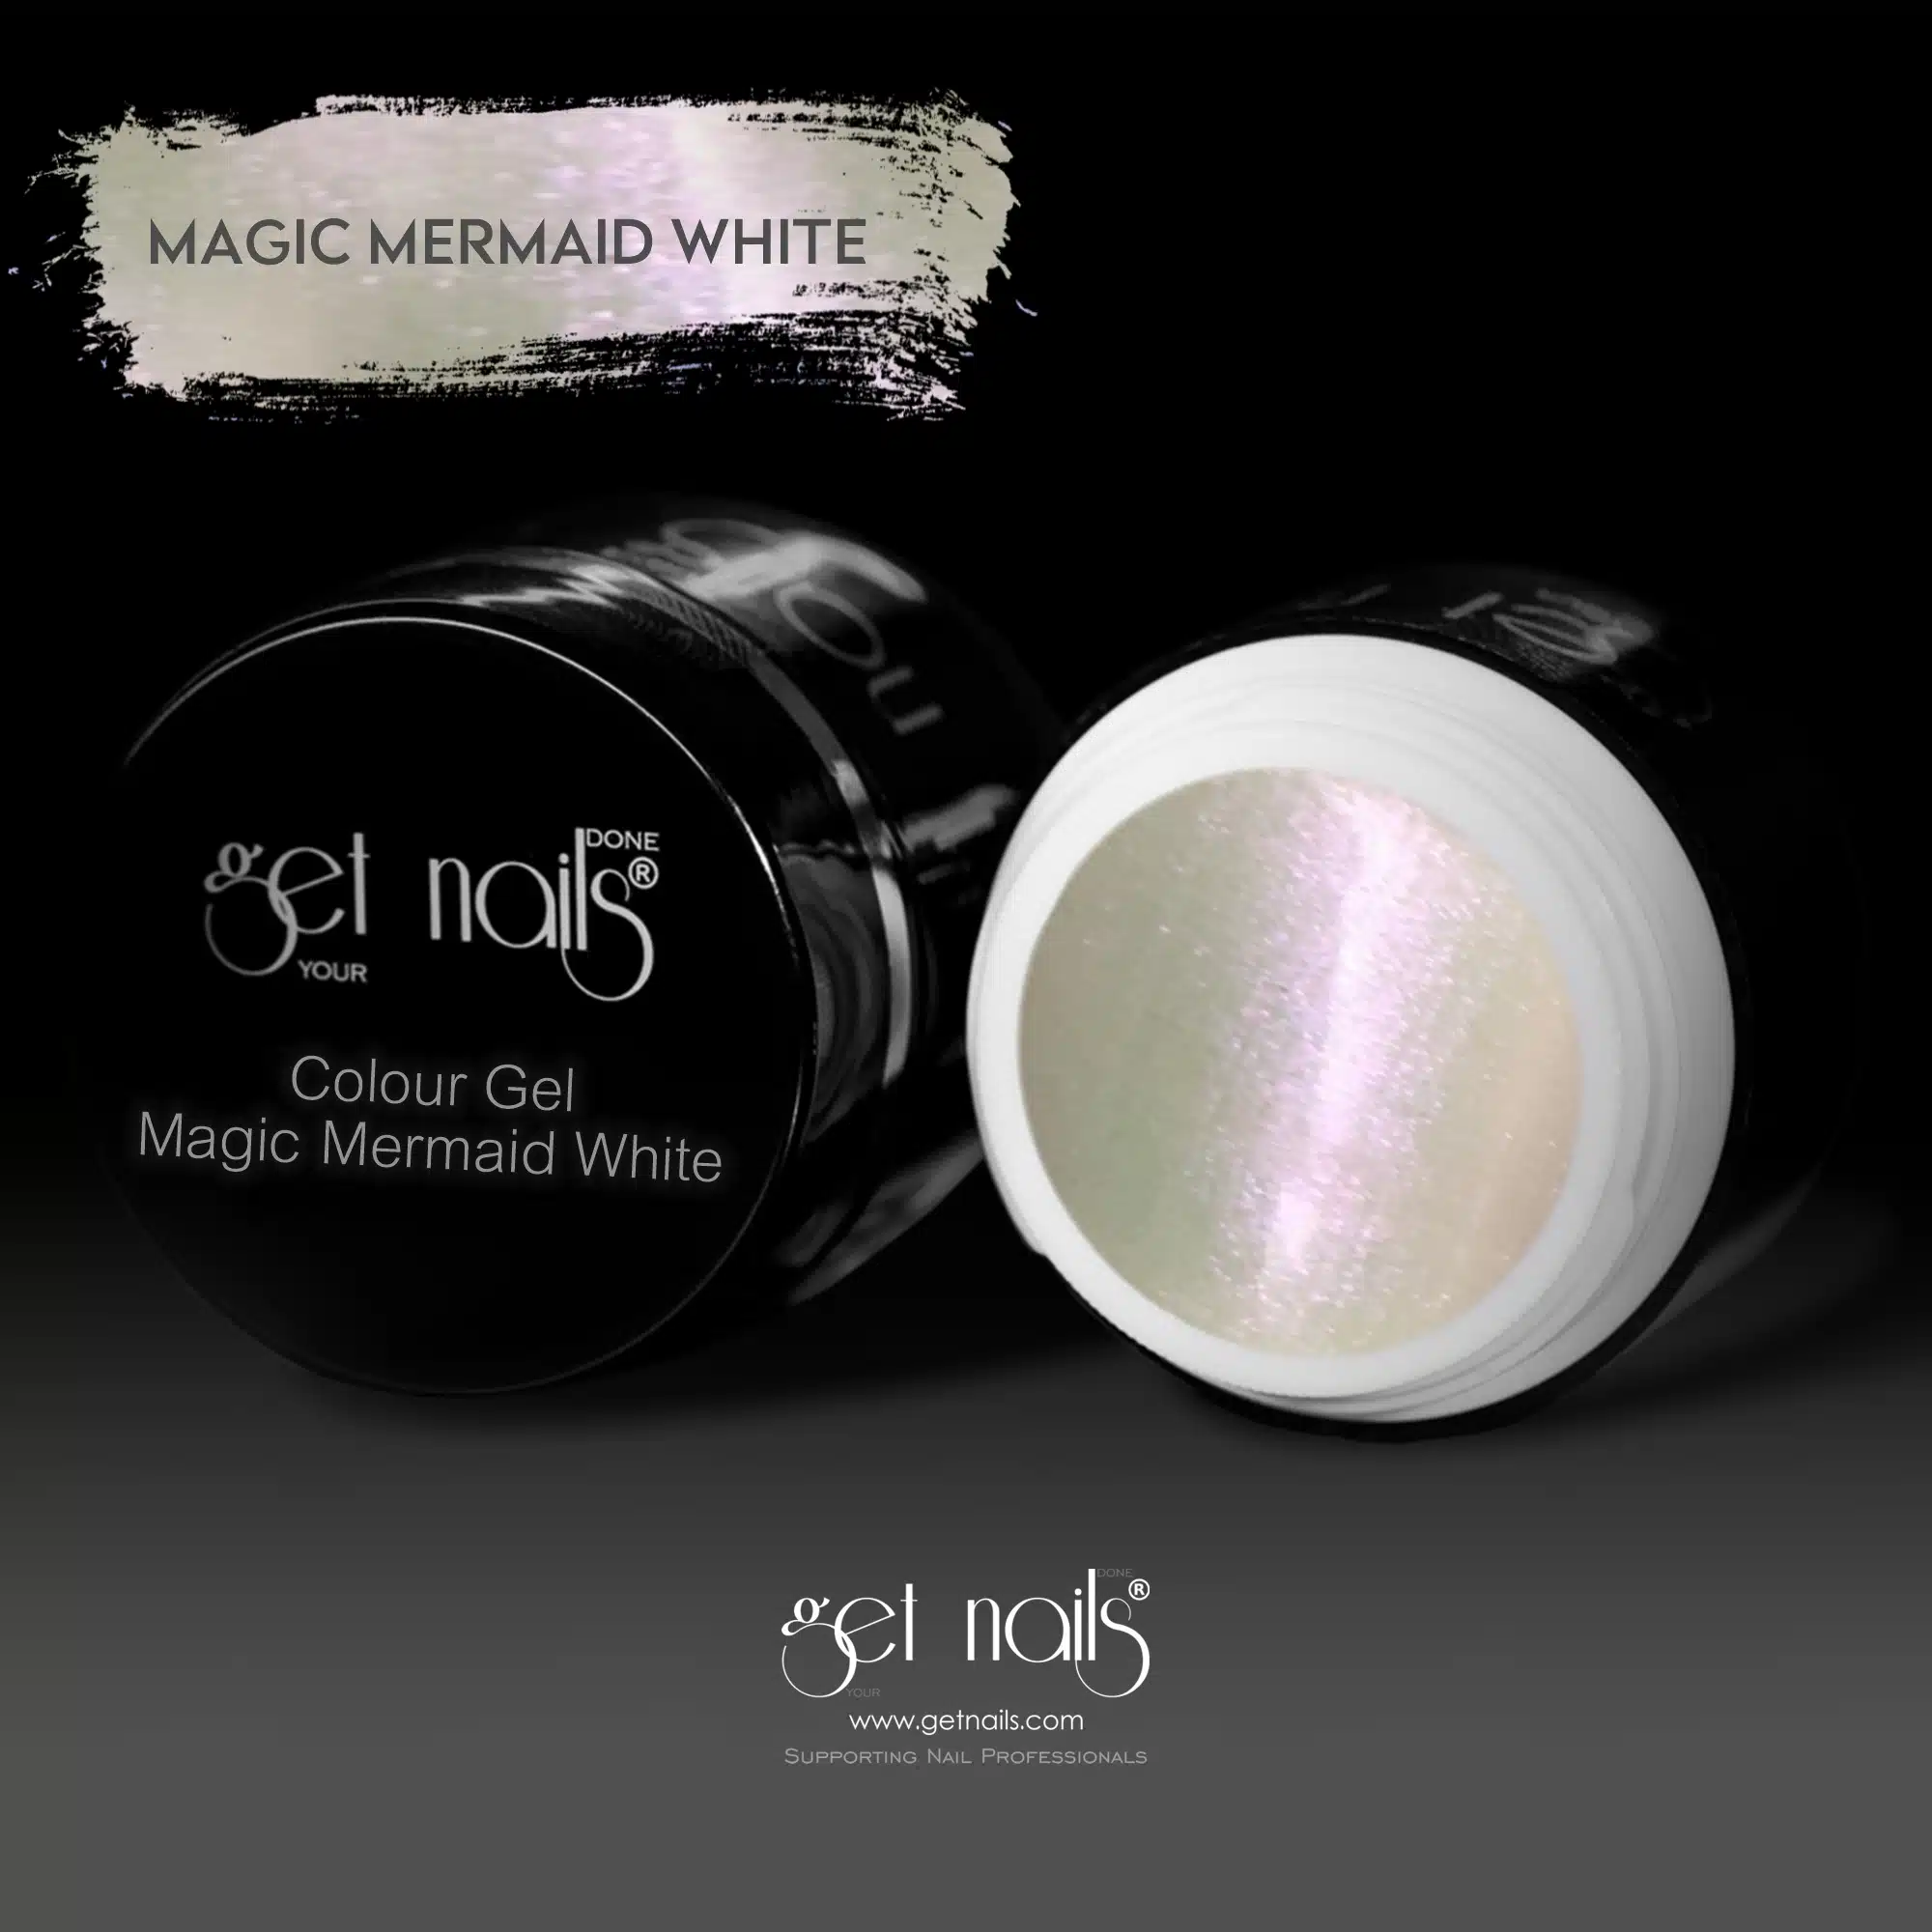 Get Nails Austria - Colour Gel Magic Mermaid White 5g